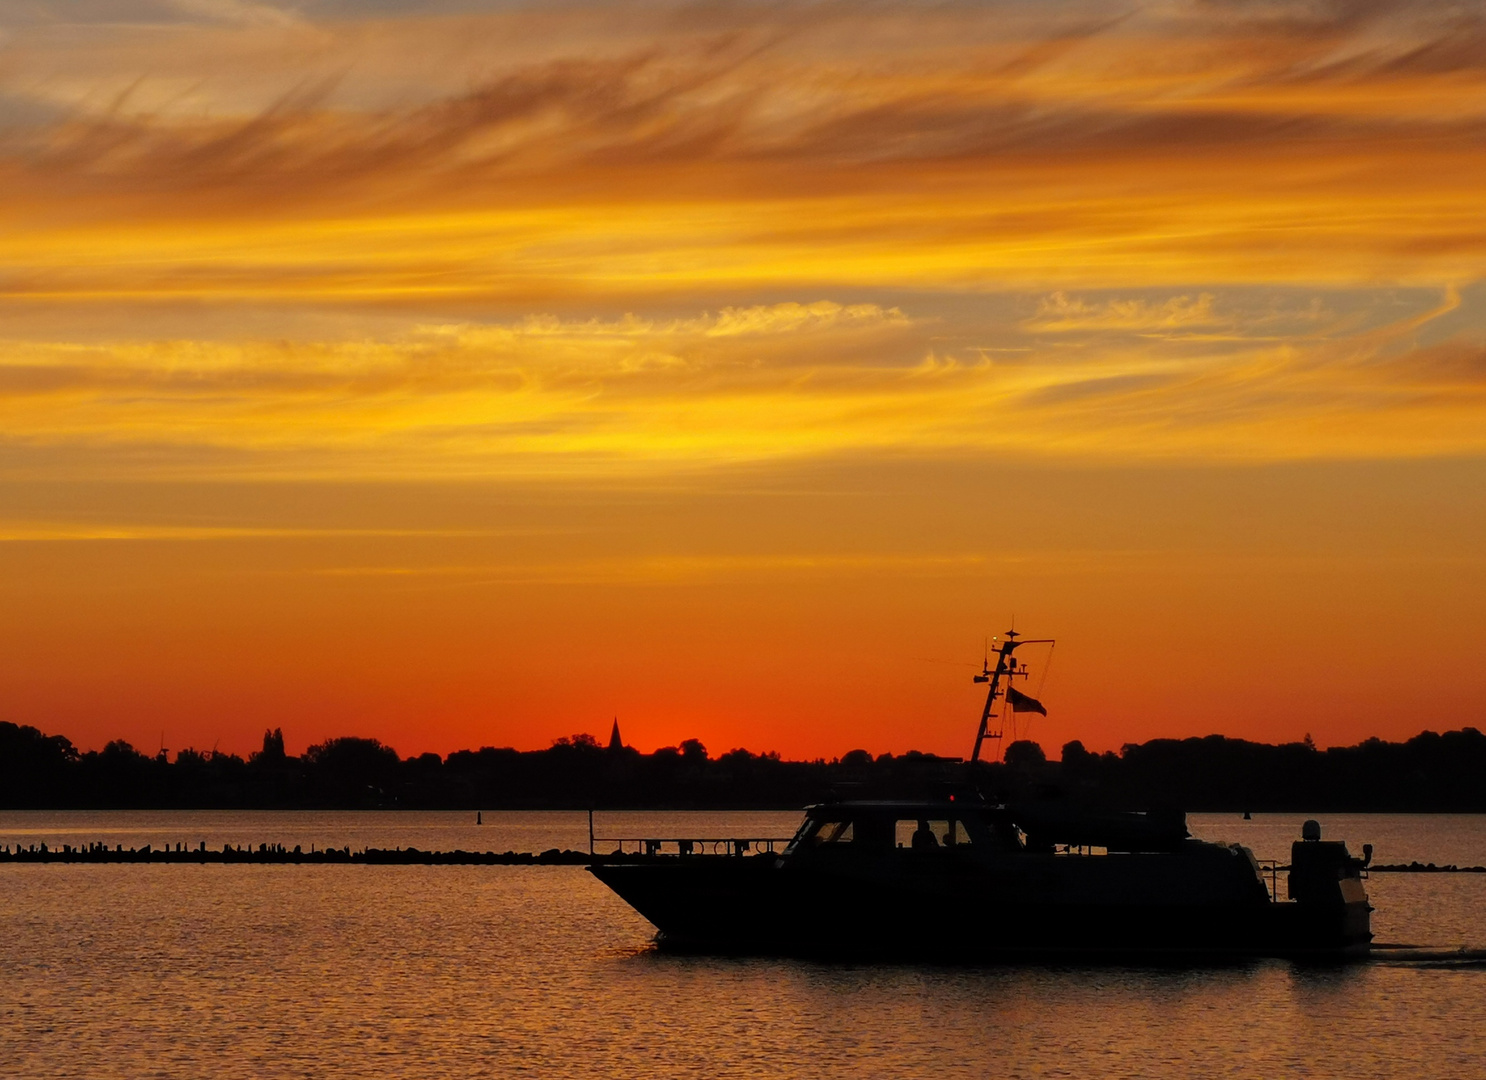 Zollboot verläßt vor Sonnenaufgang den Hafen 